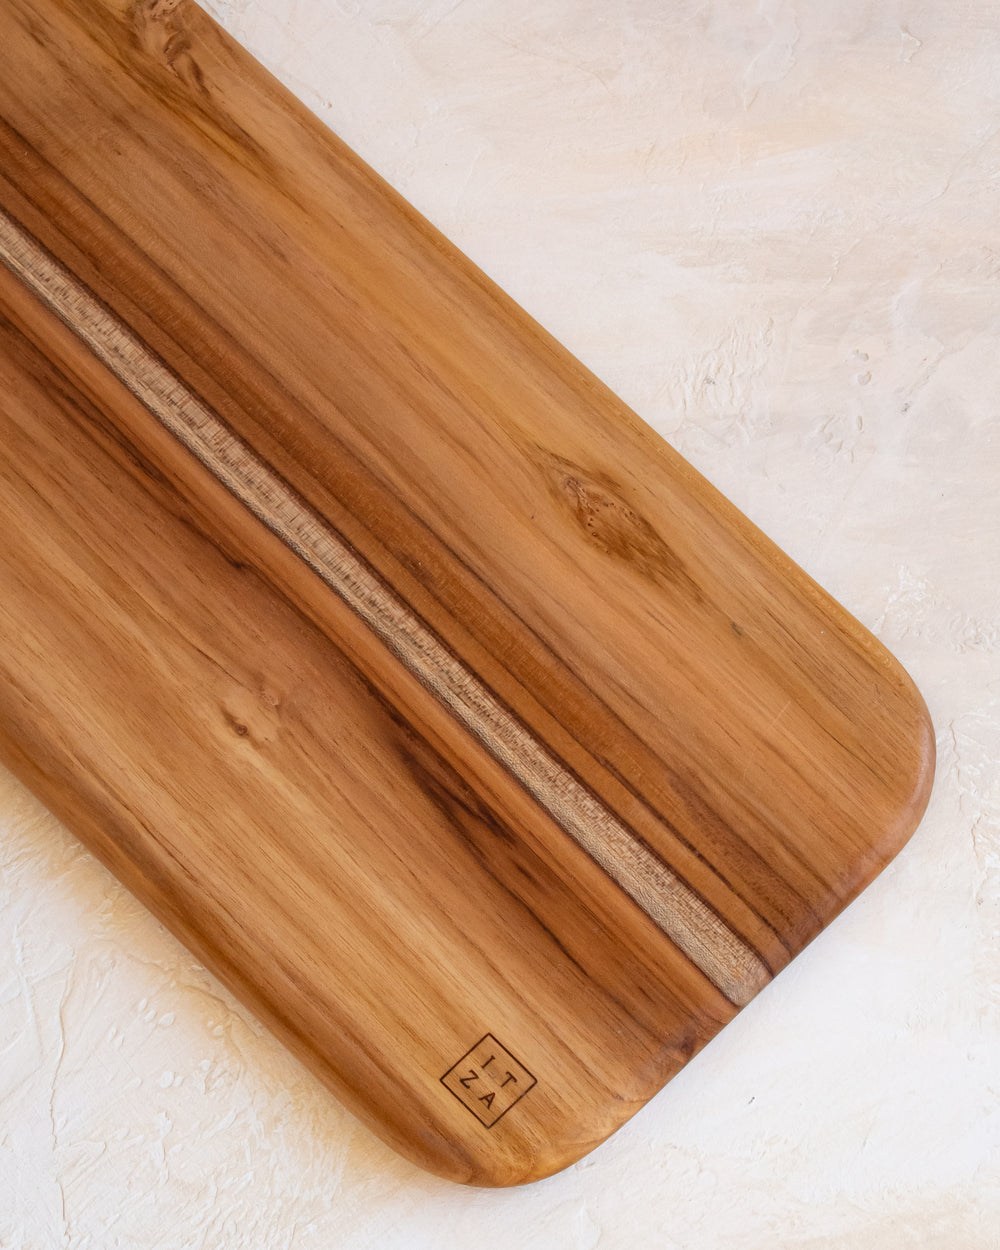 Itza Wood Large Cutting Board - Teak